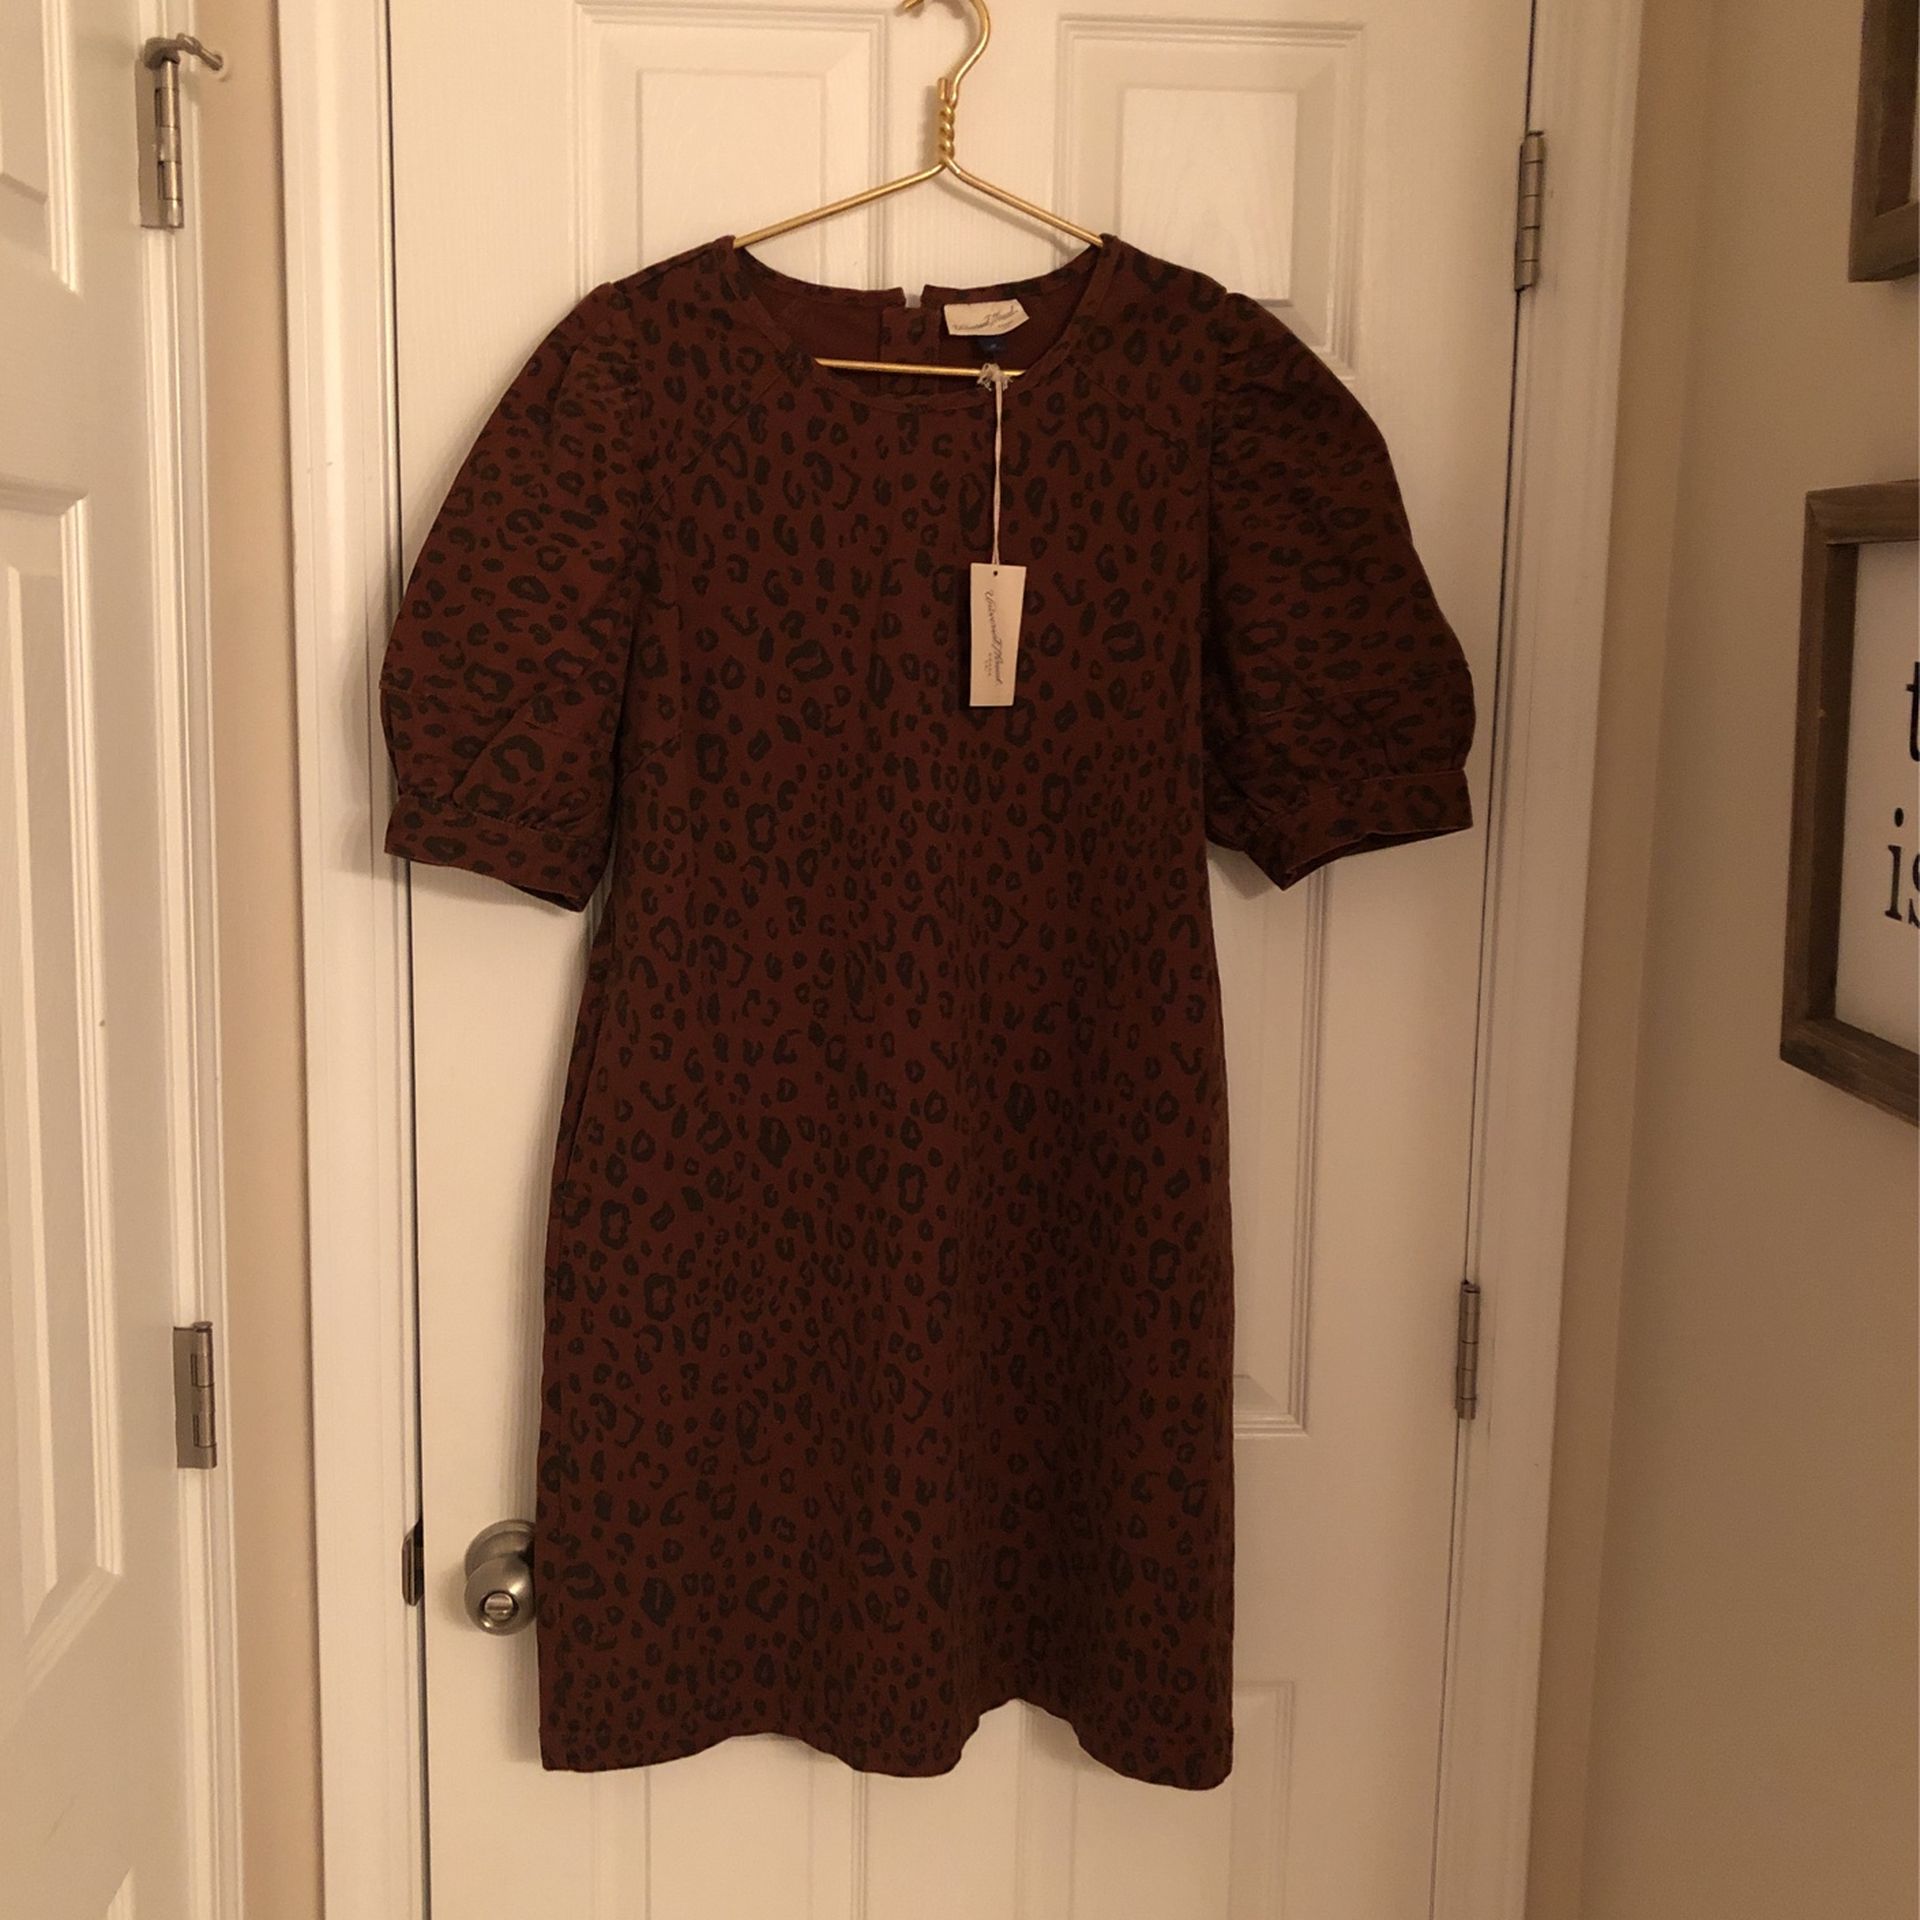 Target - Universal Thread - Leopard Print Dress